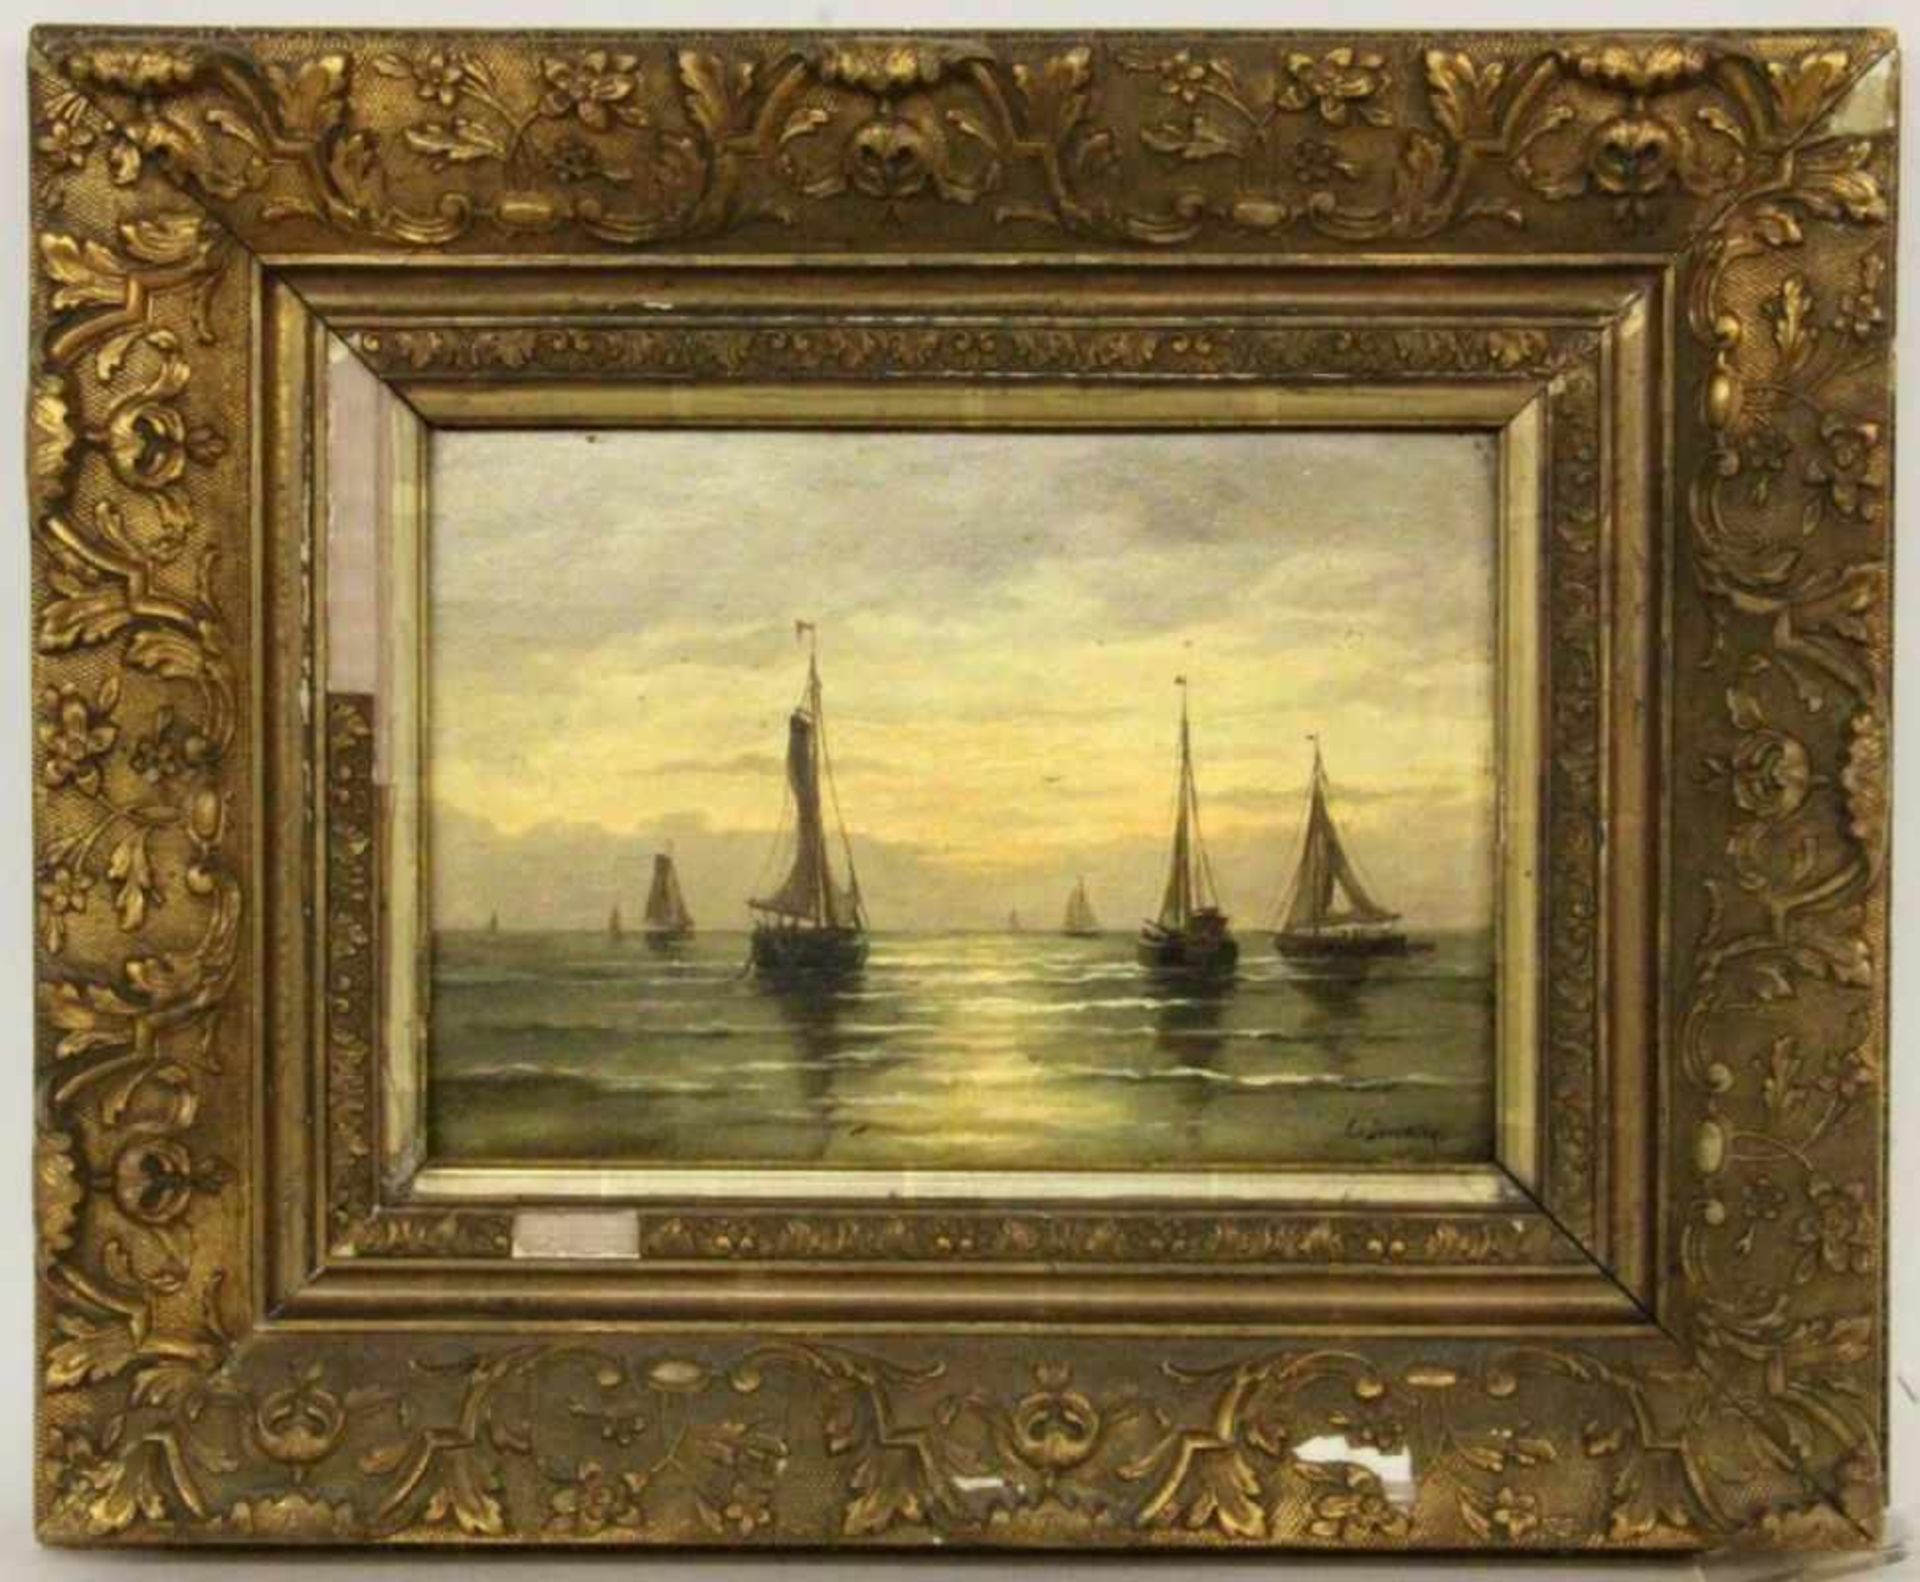 DEVENTER, JAN FREDERIKNiederlande 1822 - 1886 Segelboote im Abendlicht. Öl/Holz, signiert. 22,5x32,